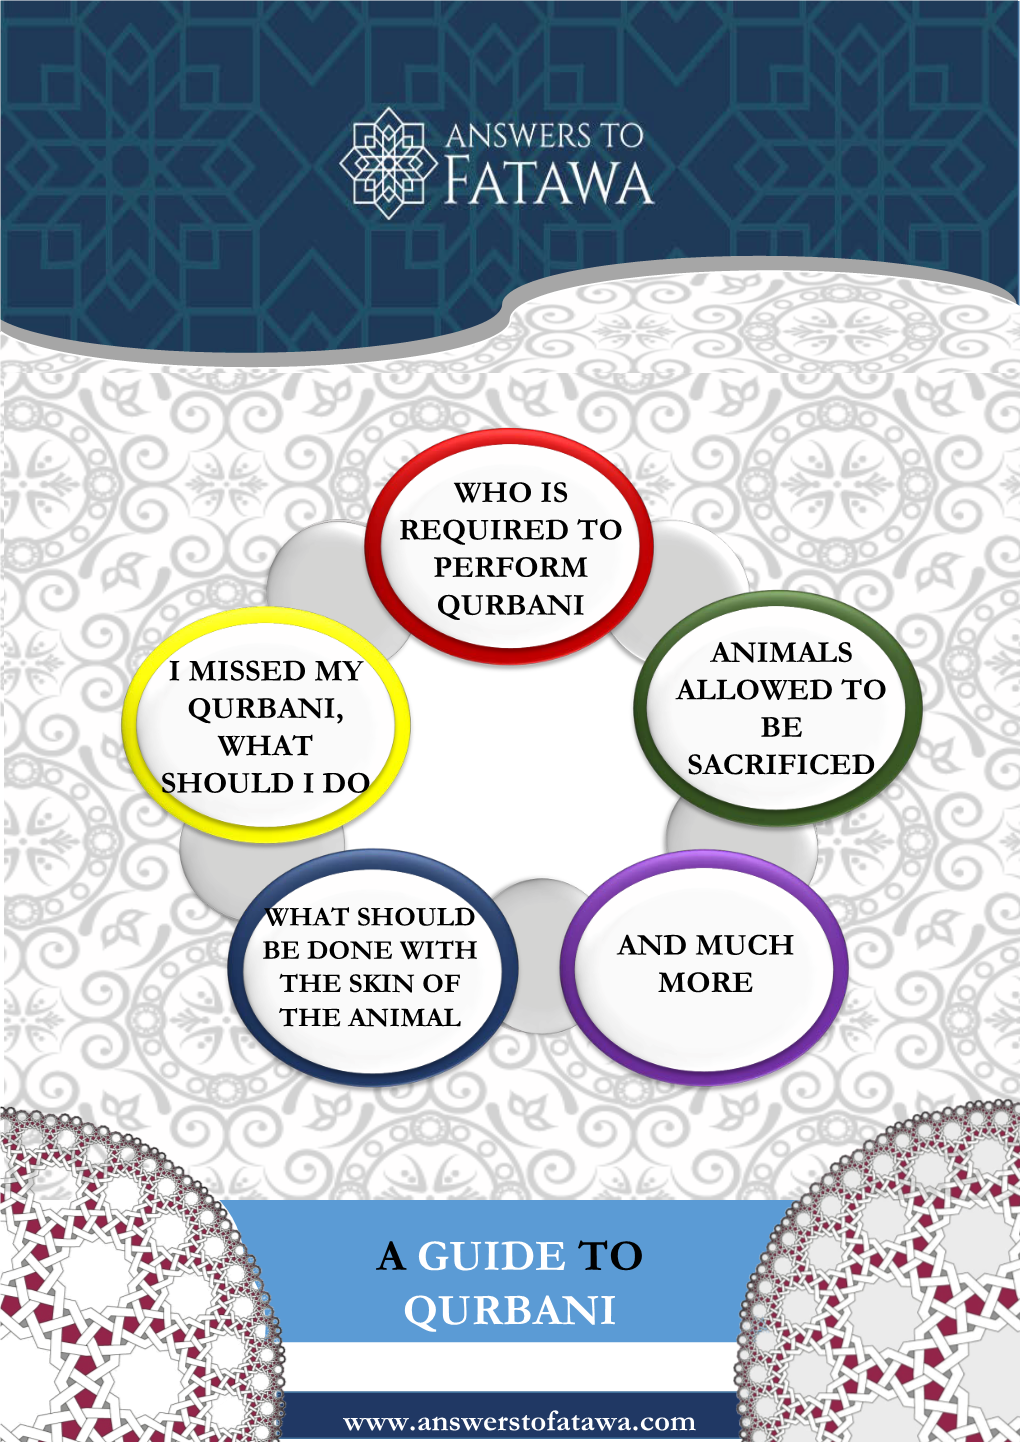 A Guide to Qurbani